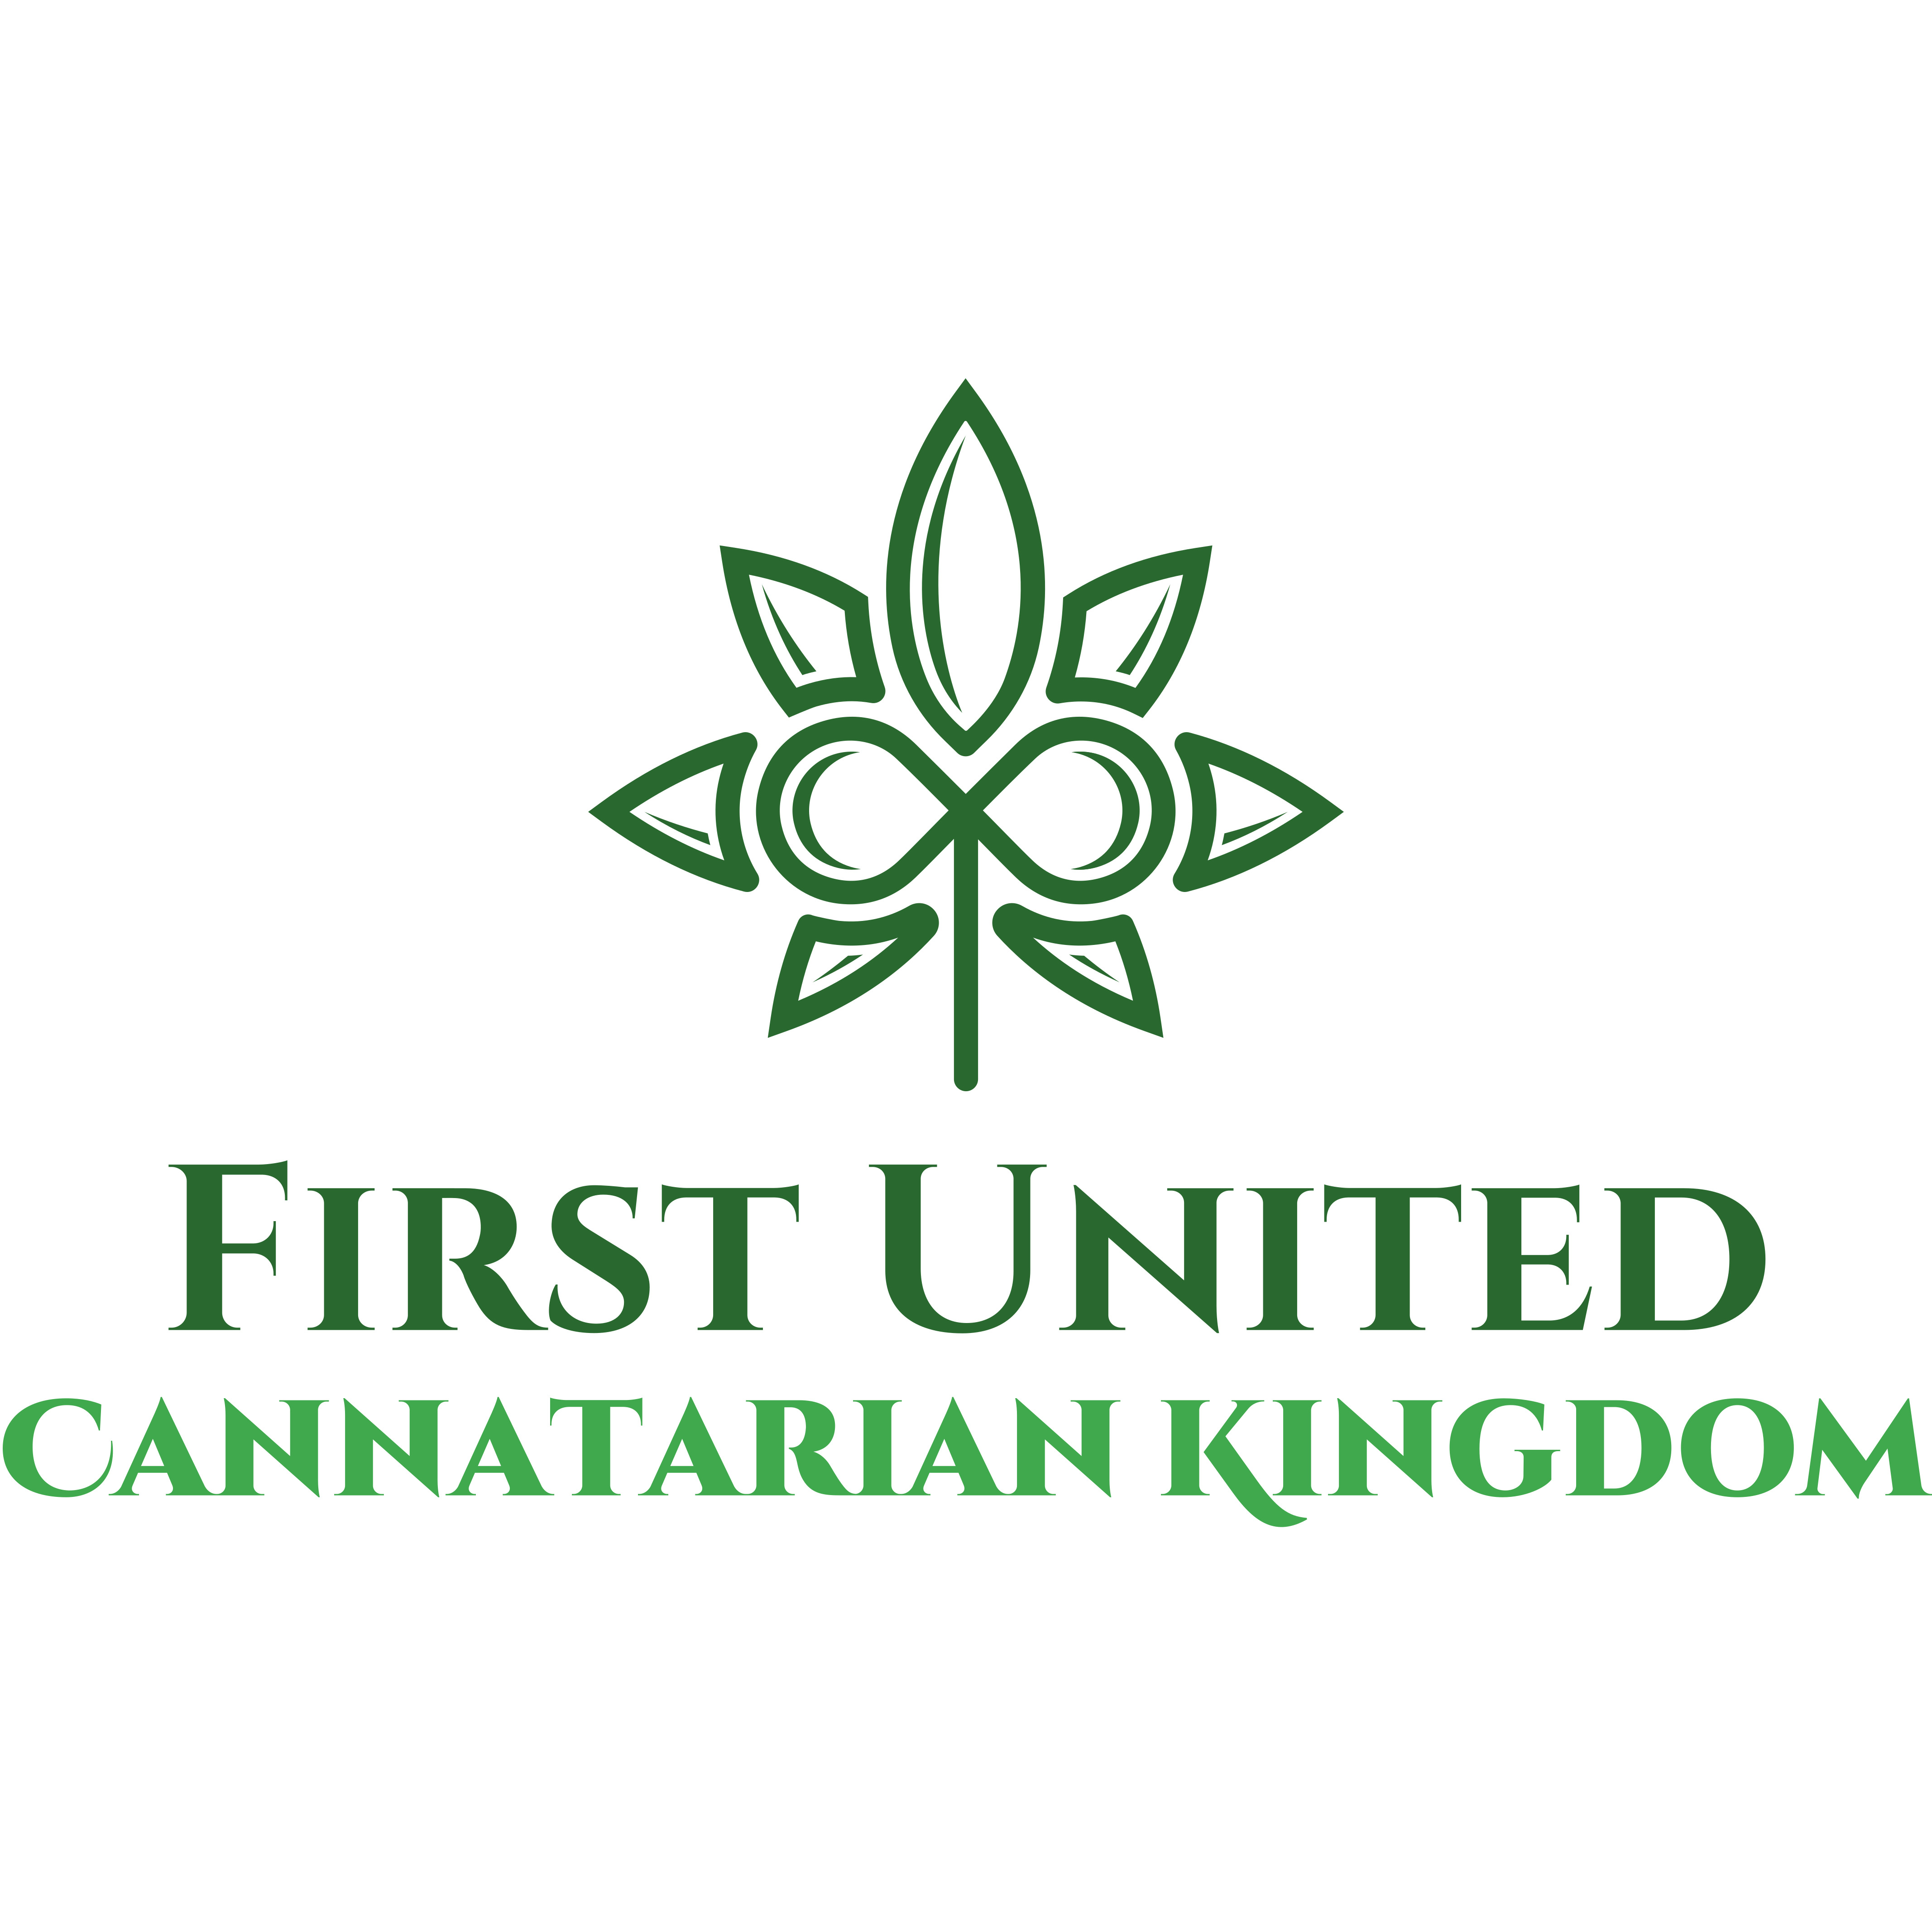 First United Cannatarian Kingdom logo